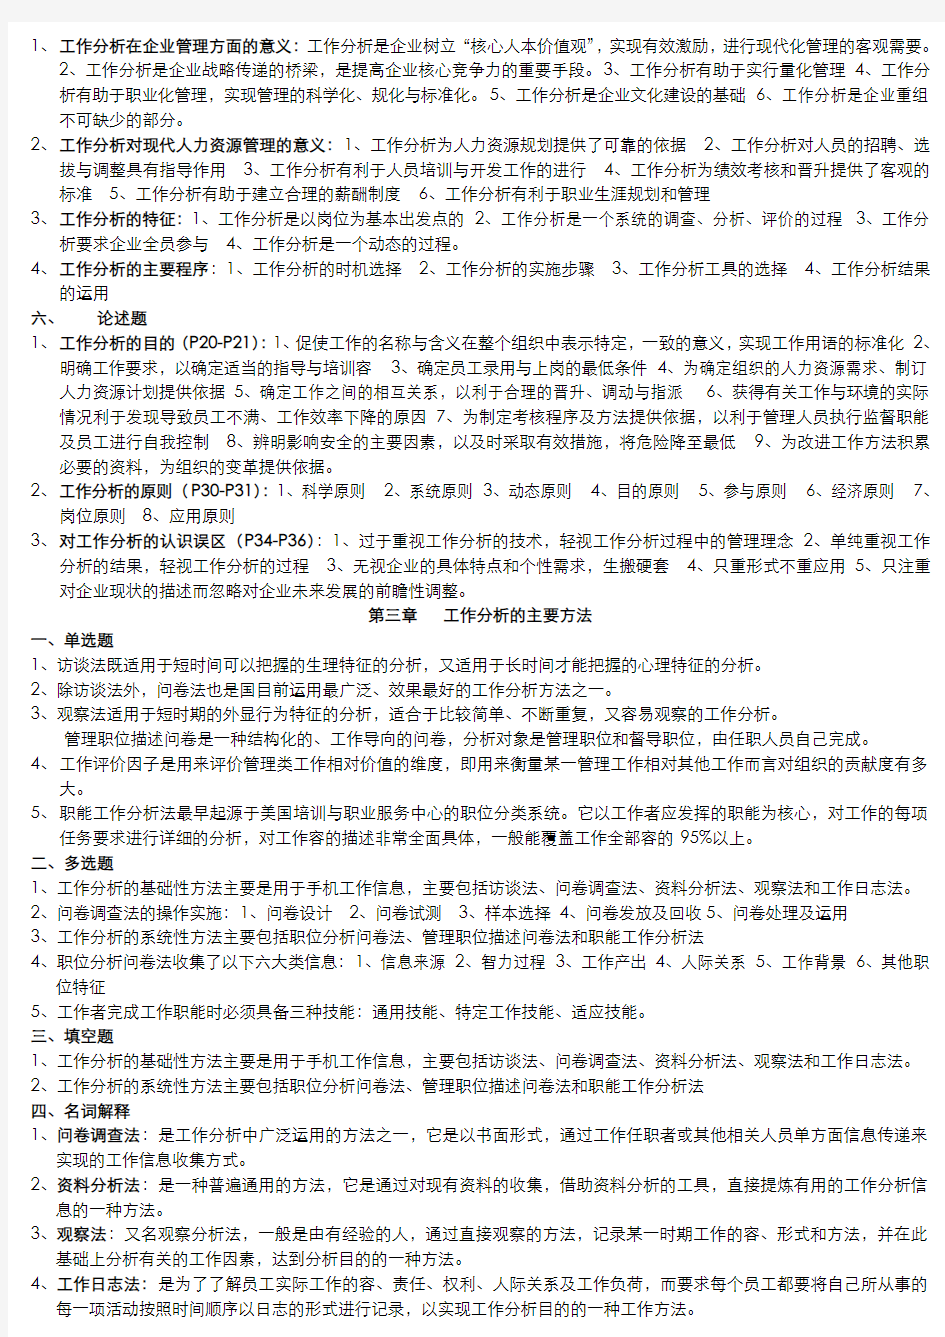 南京大学人力资源自考工作分析复习资料